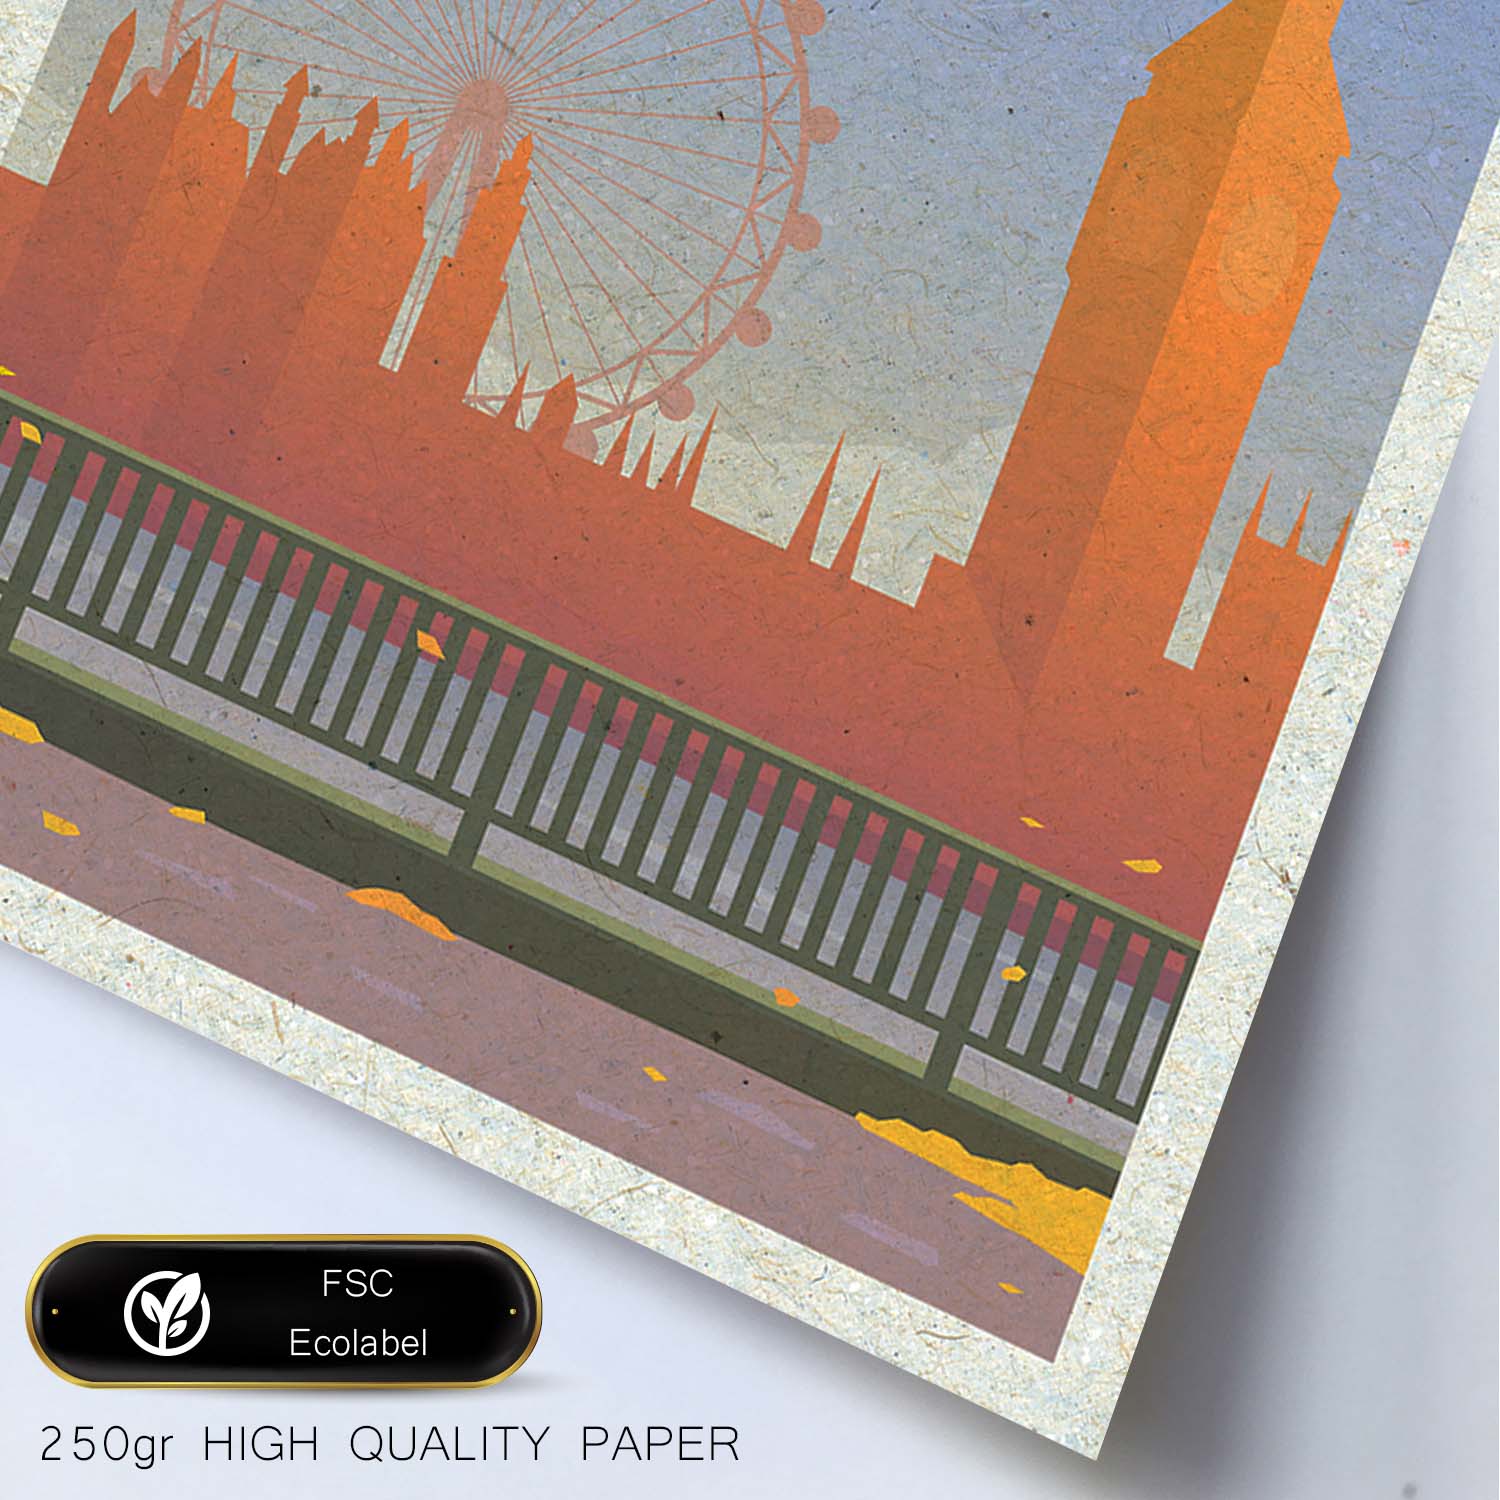 Lámina de Londres. Estilo vintage. Poster Big Ben y ojo de Londres en colores. Anuncio Londres-Artwork-Nacnic-Nacnic Estudio SL